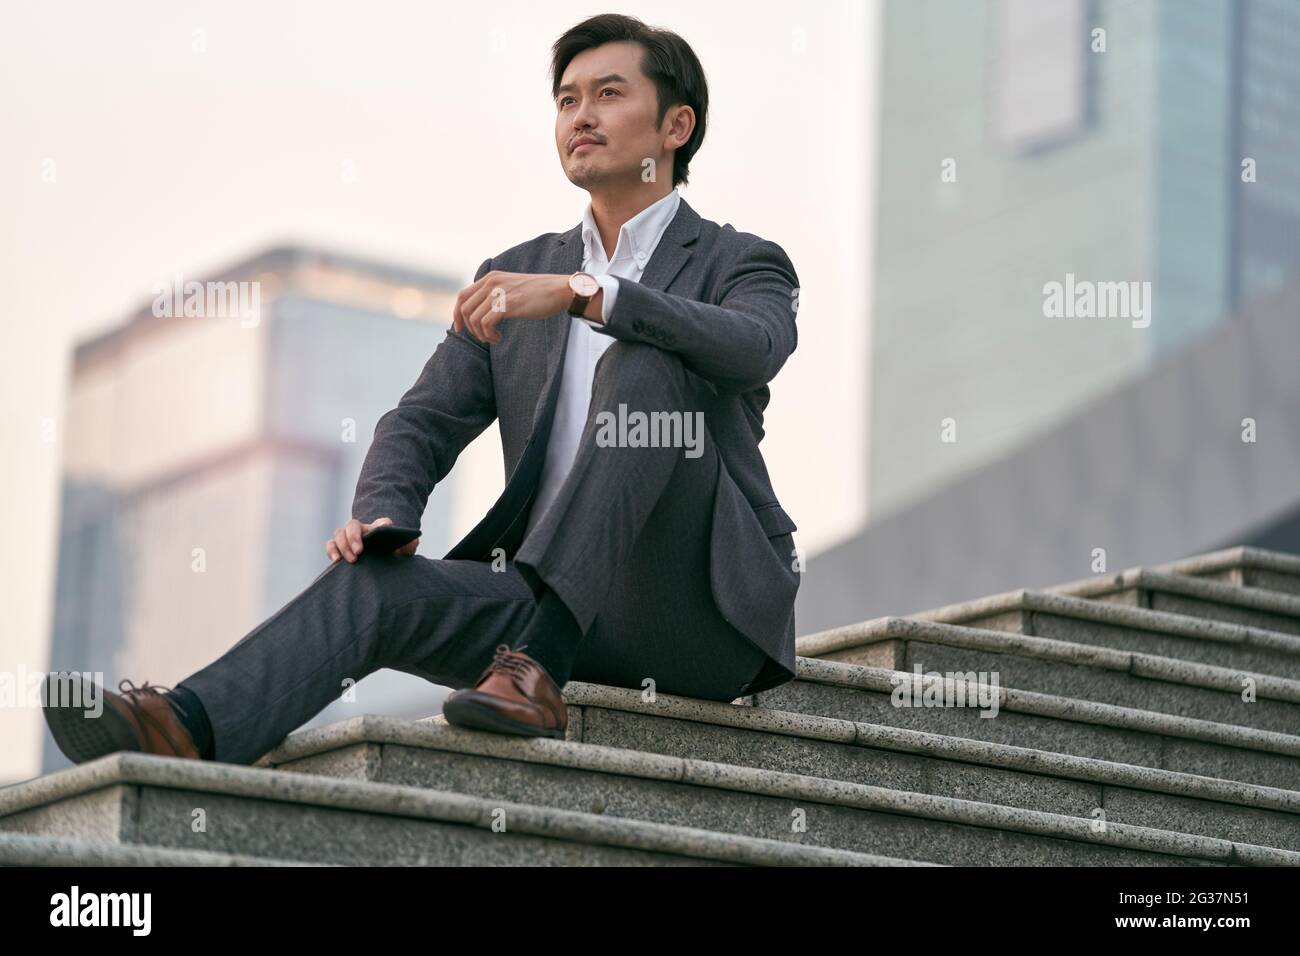 portrait en plein air d'un homme d'affaires asiatique réussi assis sur des marches en costume complet Banque D'Images